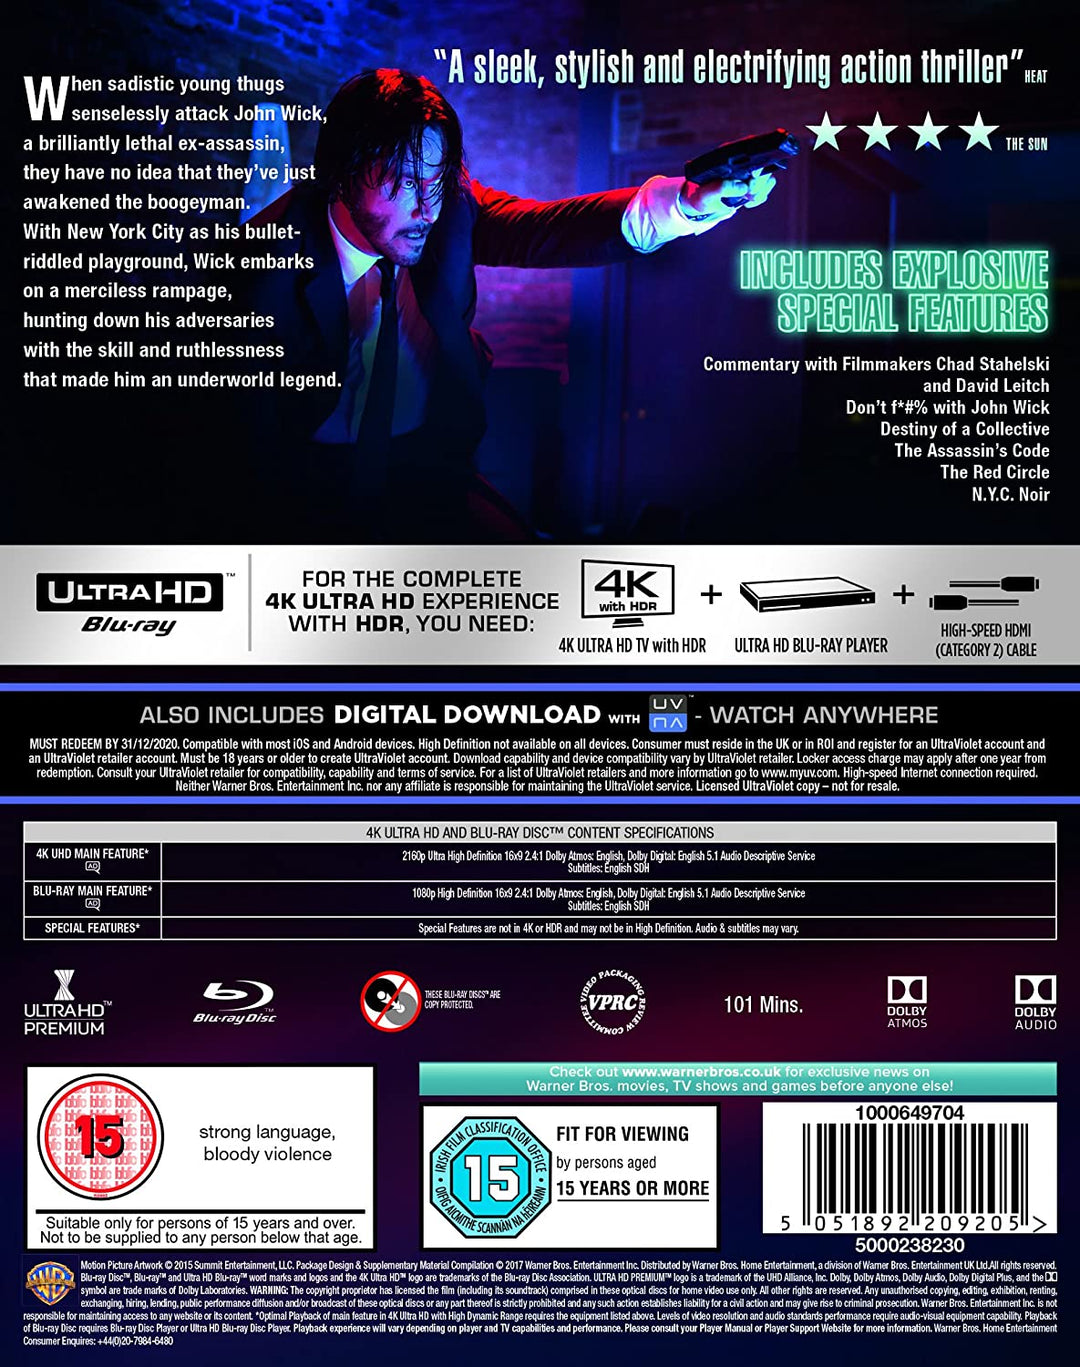 John Wick [4K Ultra HD] [2015] [2017] - Action/Neo-noir [Blu-ray]